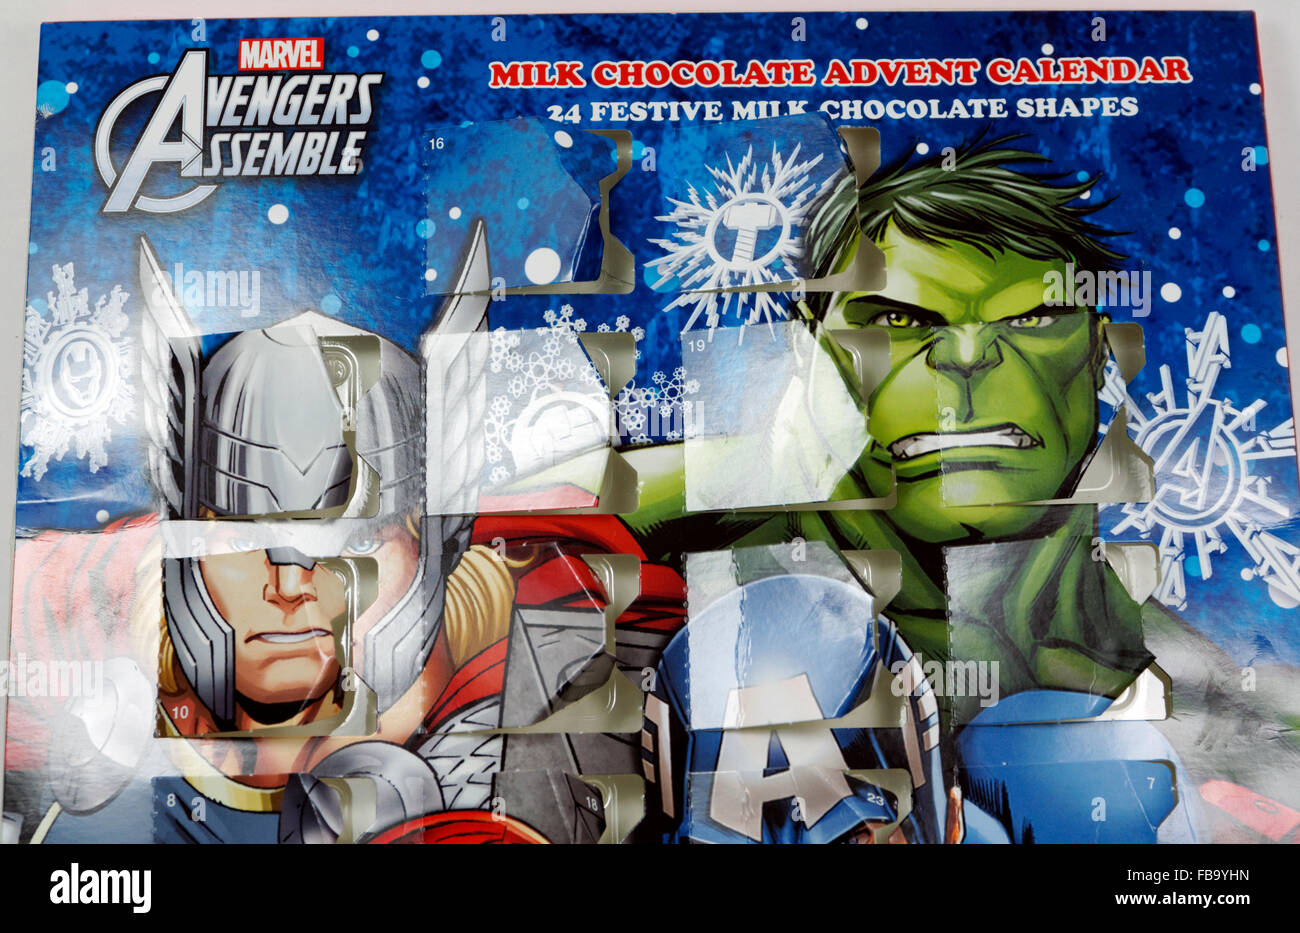 Marvel Avengers Adventskalender. Stockfoto